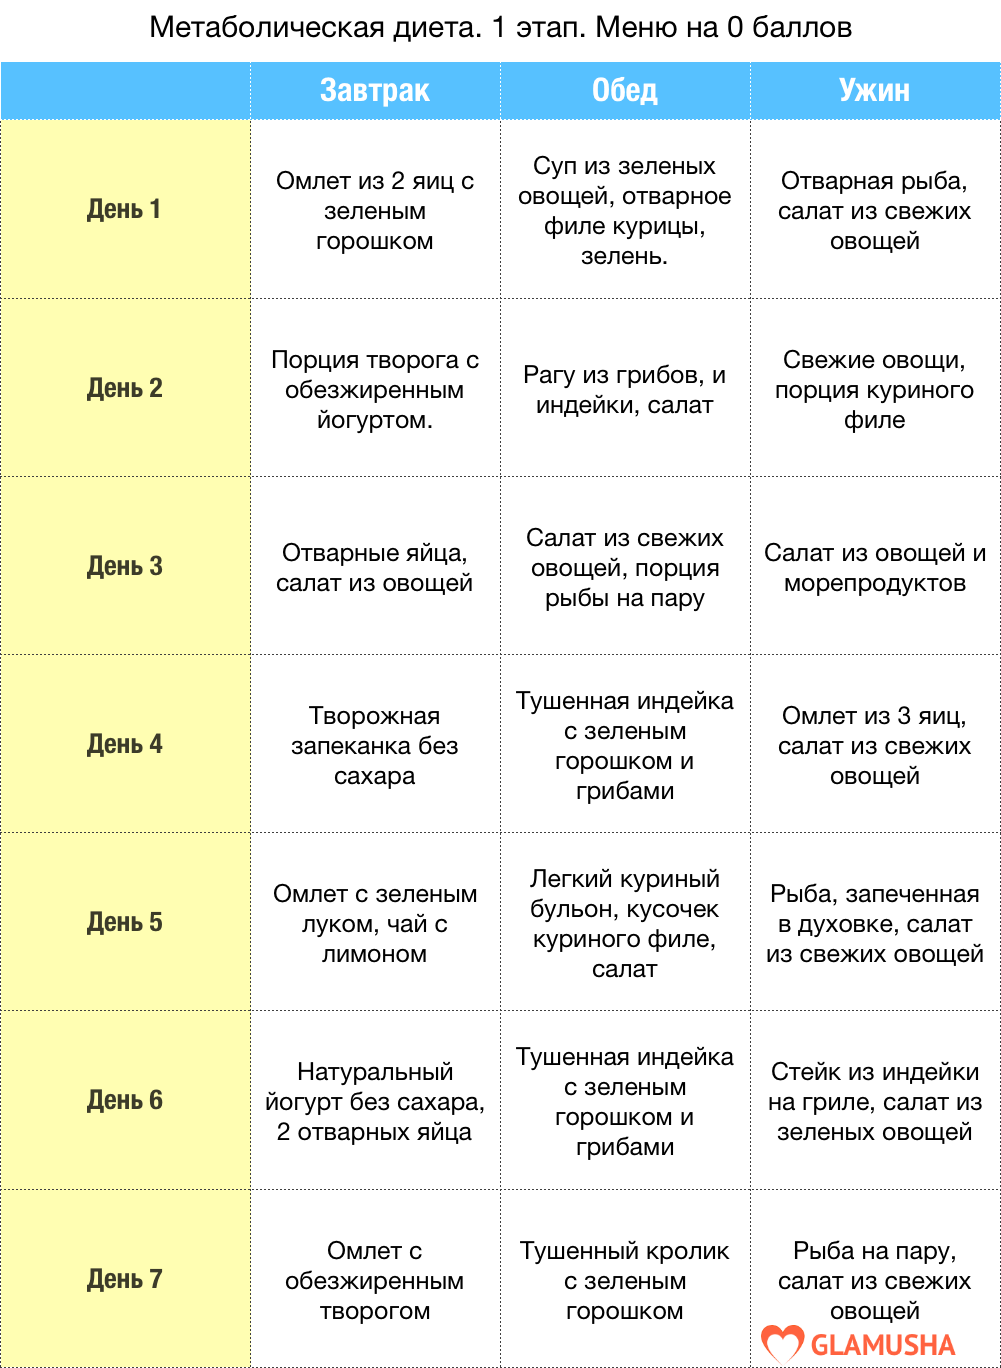 Питание от ковалькова а. в.: этапы и меню